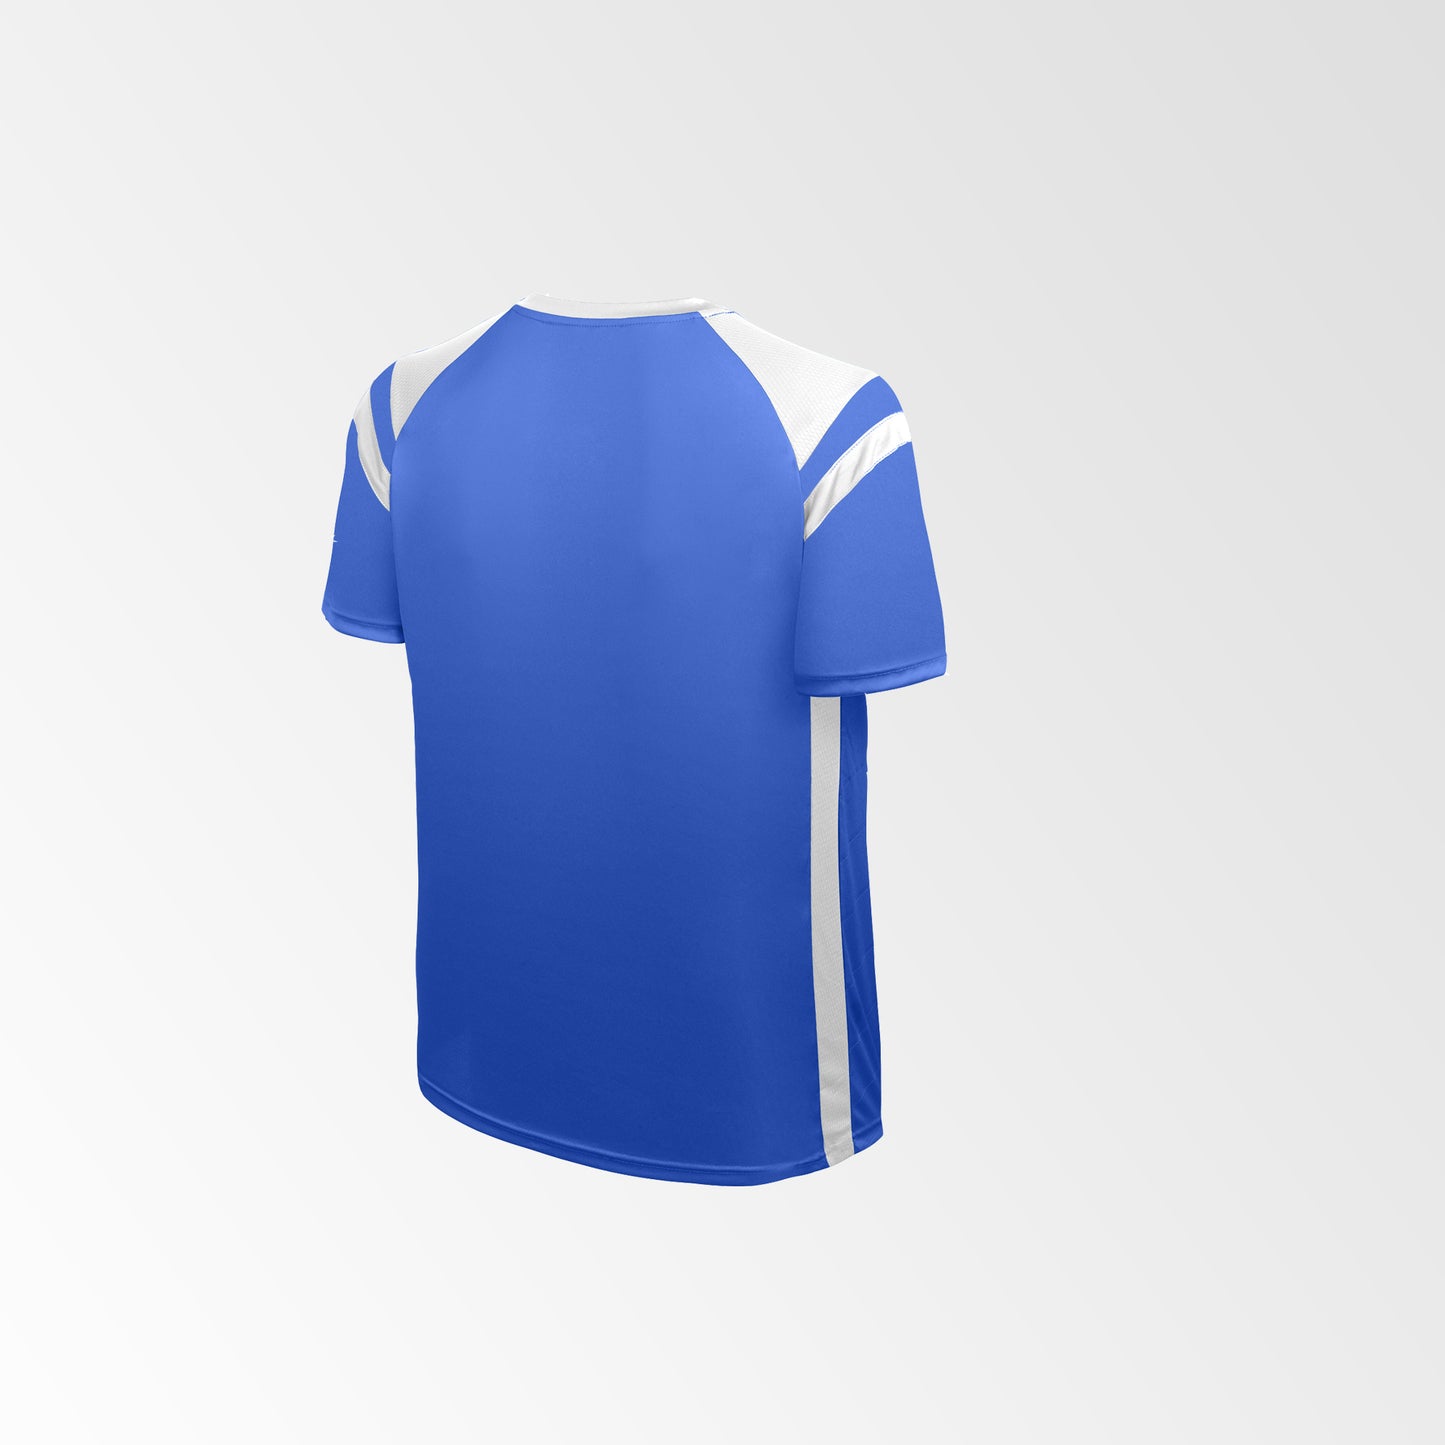 Camiseta de Futbol y Short Modelo High Five Azul Blanco